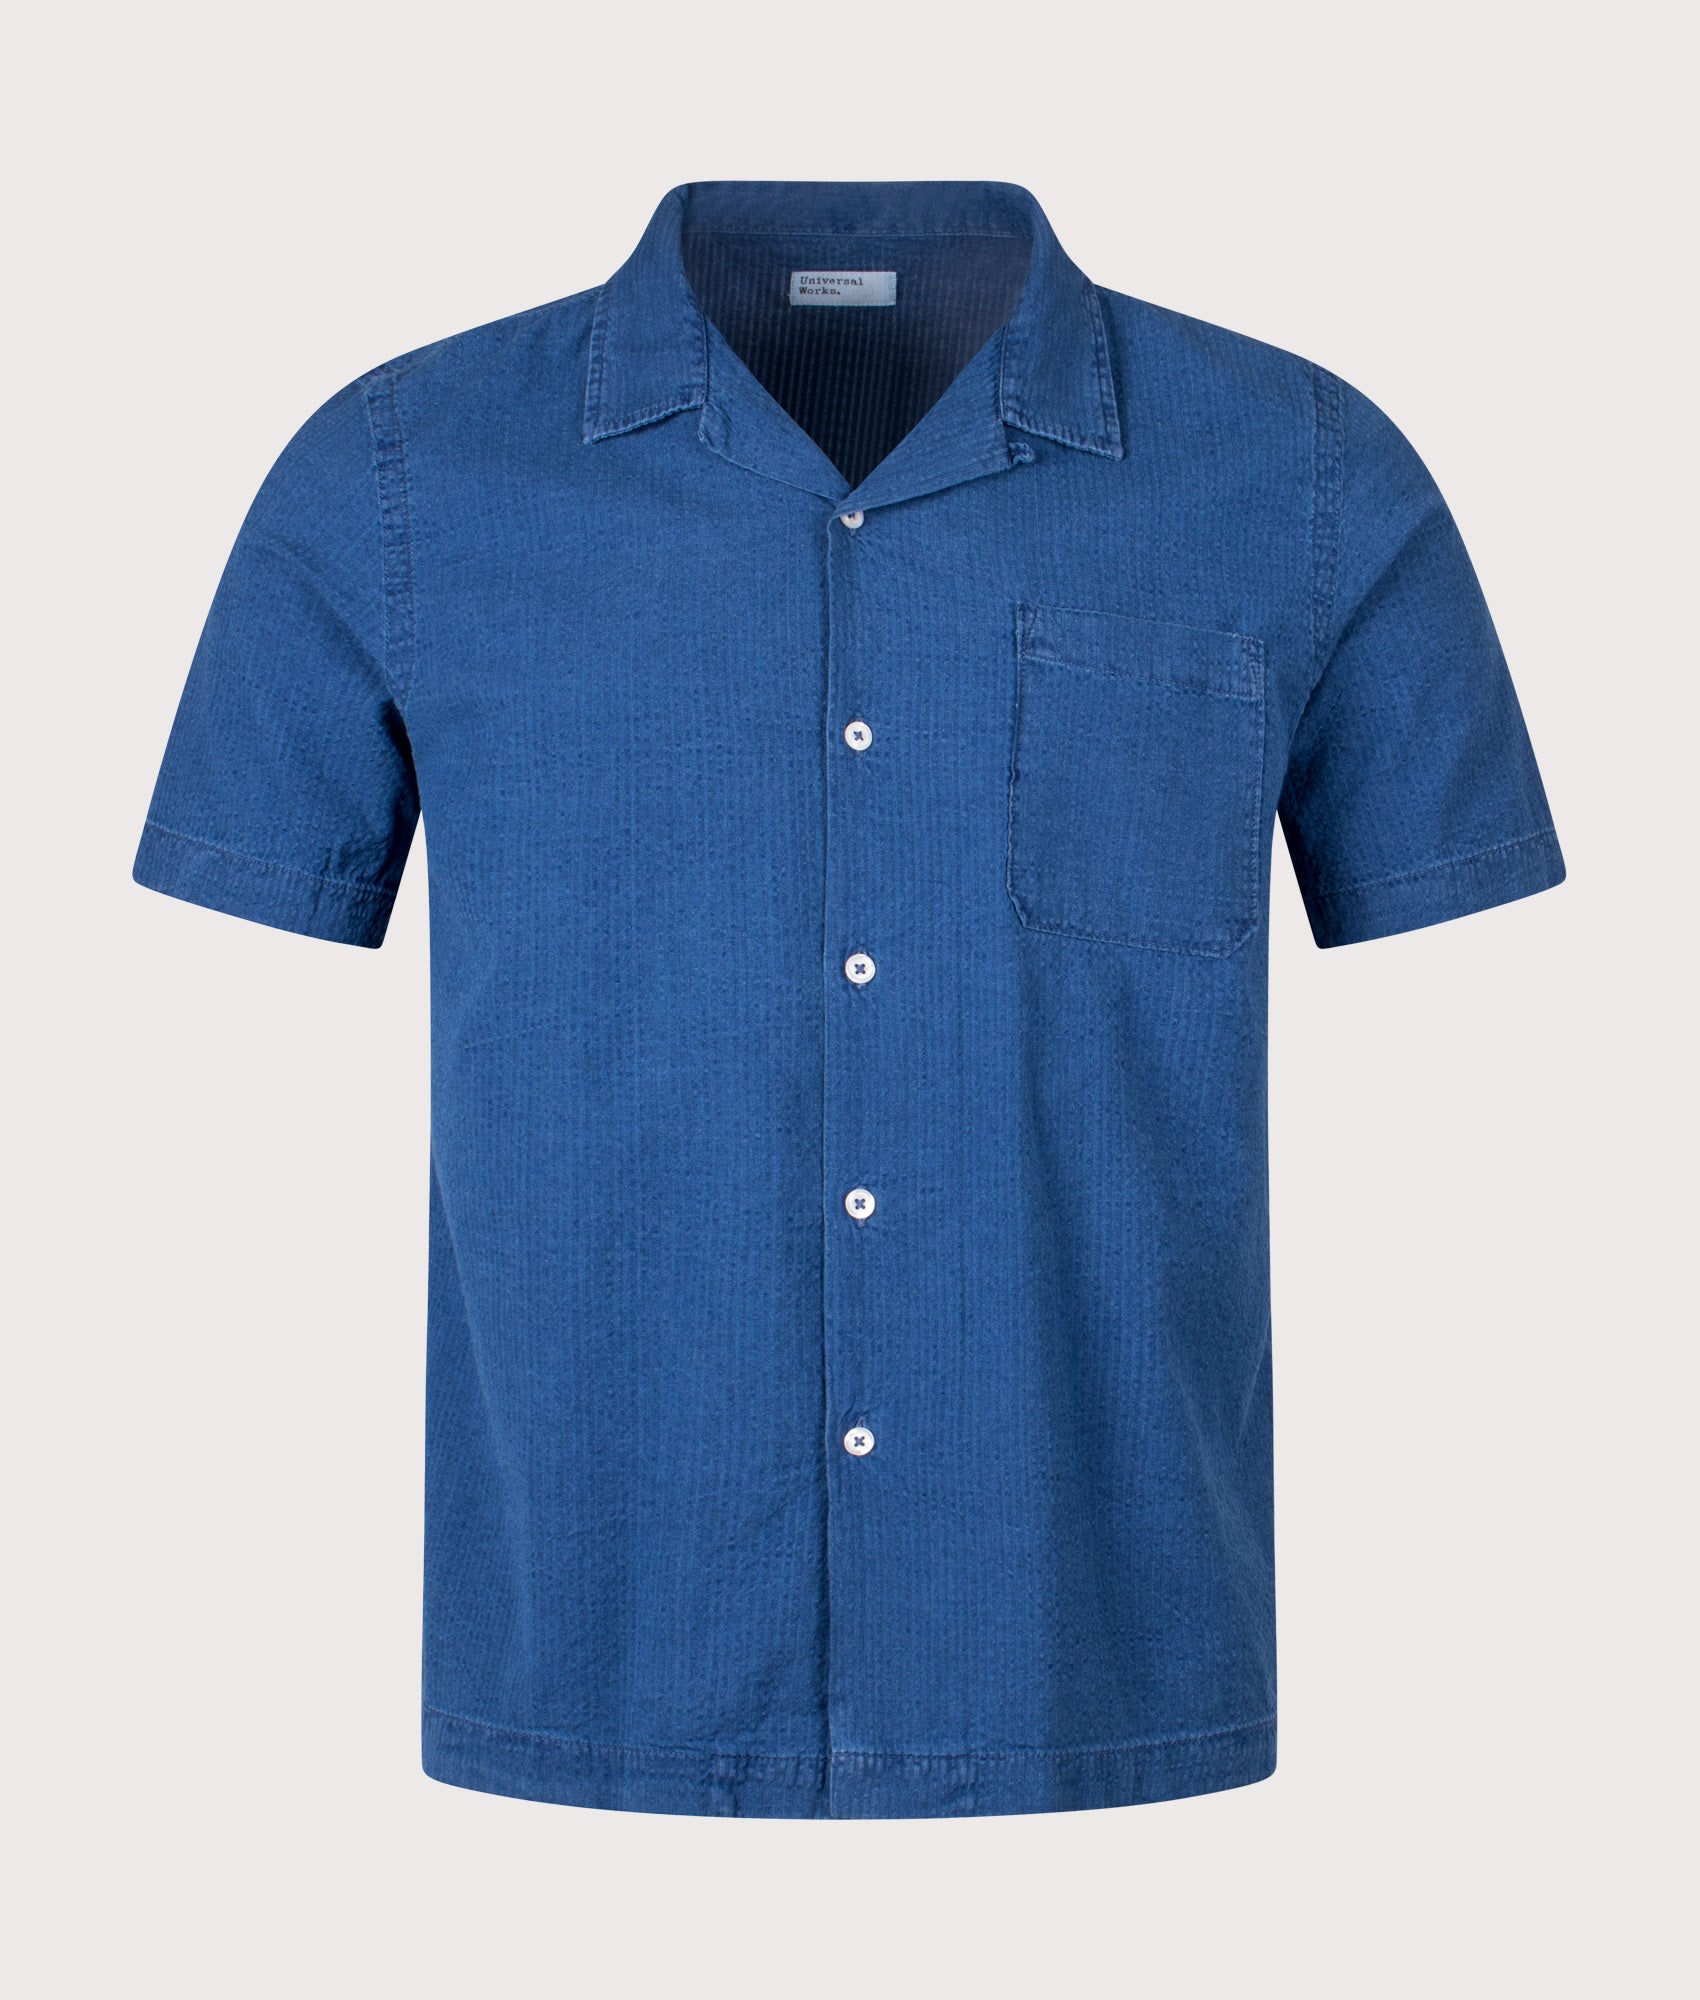 Universal Works Mens Road Shirt - Colour: Washed Indigo - Size: Medium